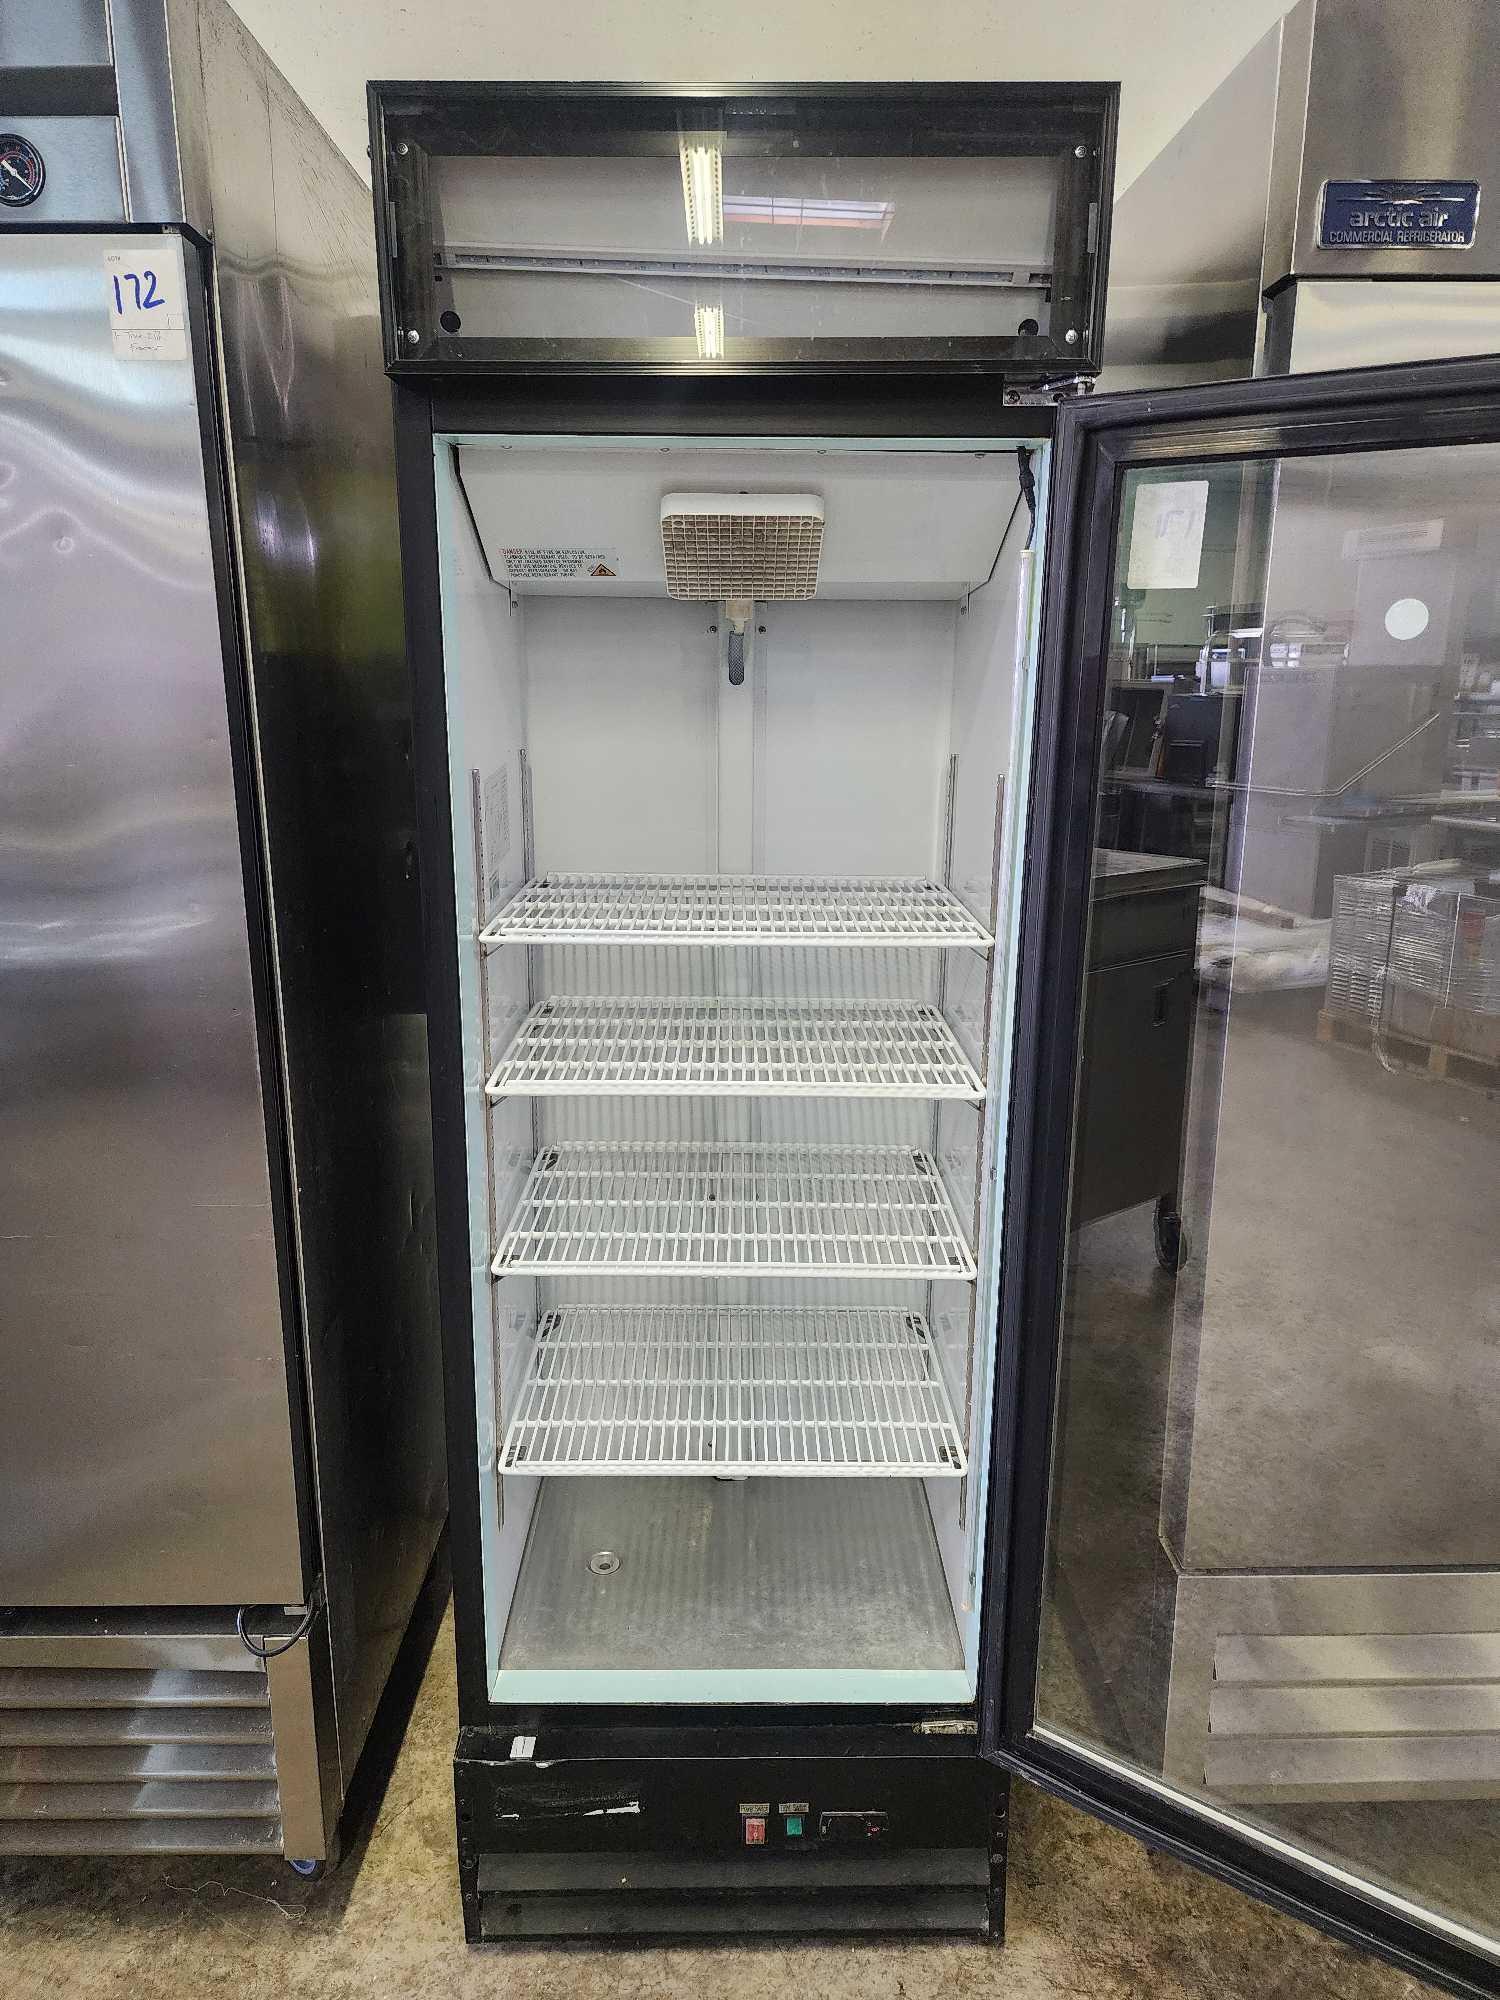 Avantco 1 Glass Door Refrigerator